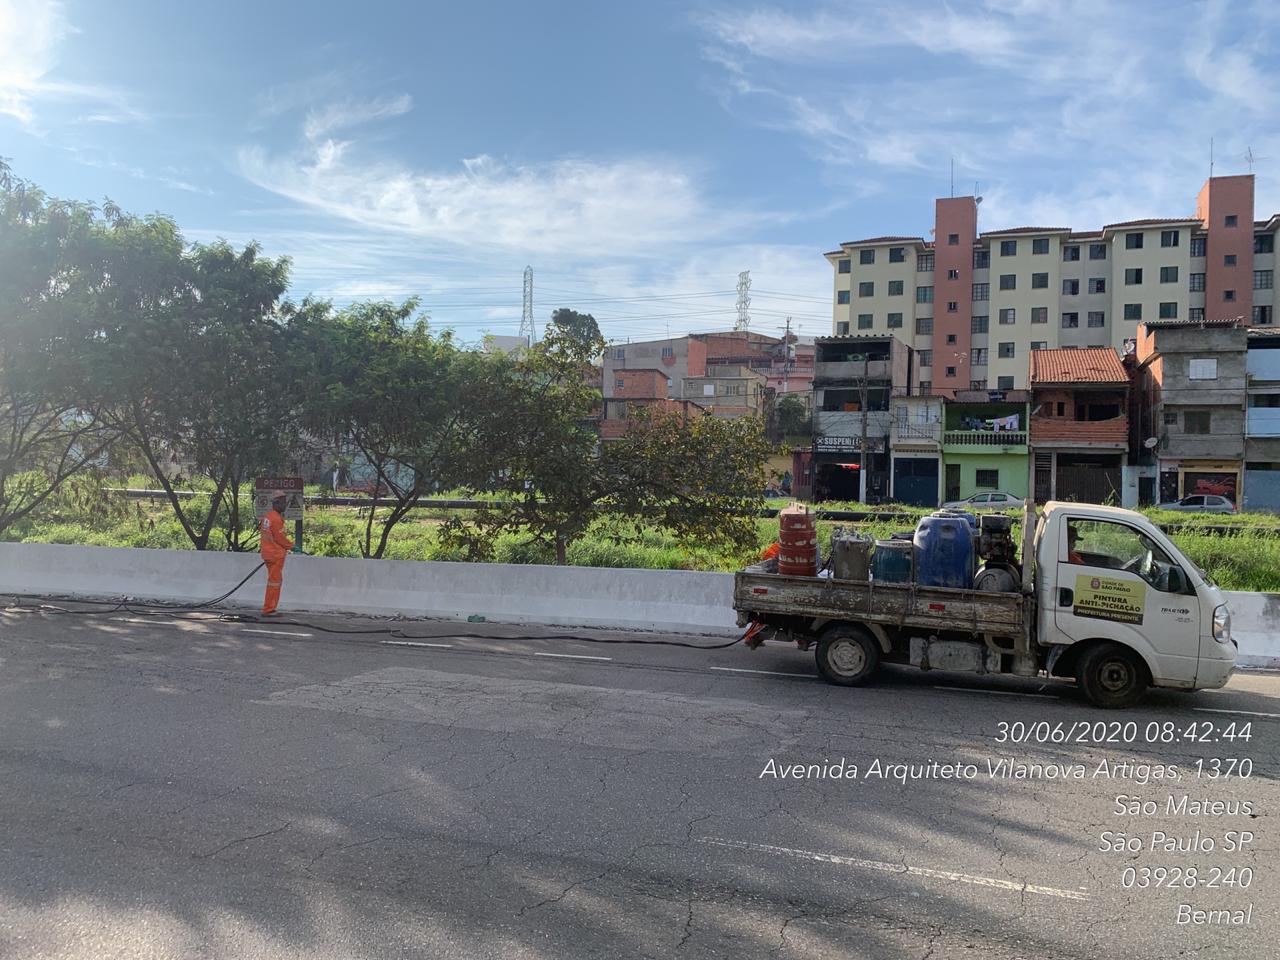 Caminhão de pintura a jato está parado diante de avenida, com prédios de apartamentos ao fundo. Um funcionário de macacão laranja vai em direção ao caminhão. 